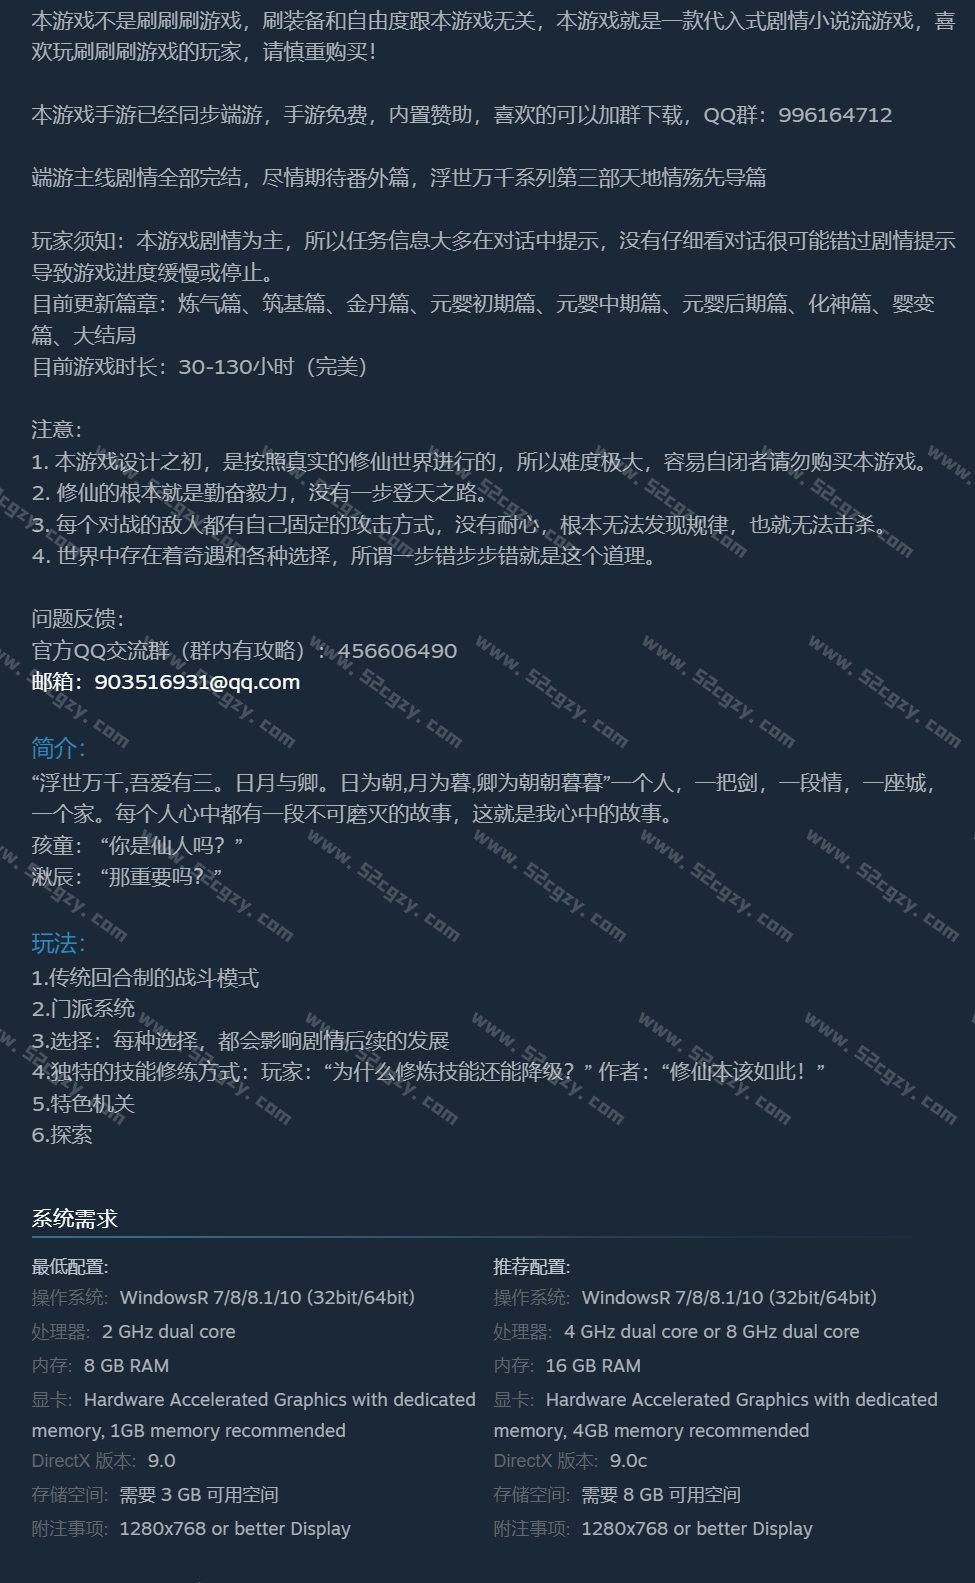 《浮世万千之前世今生》免安装-重大更新-V20201025大结局完结篇10.25绿色中文版[1.93GB] 单机游戏 第8张